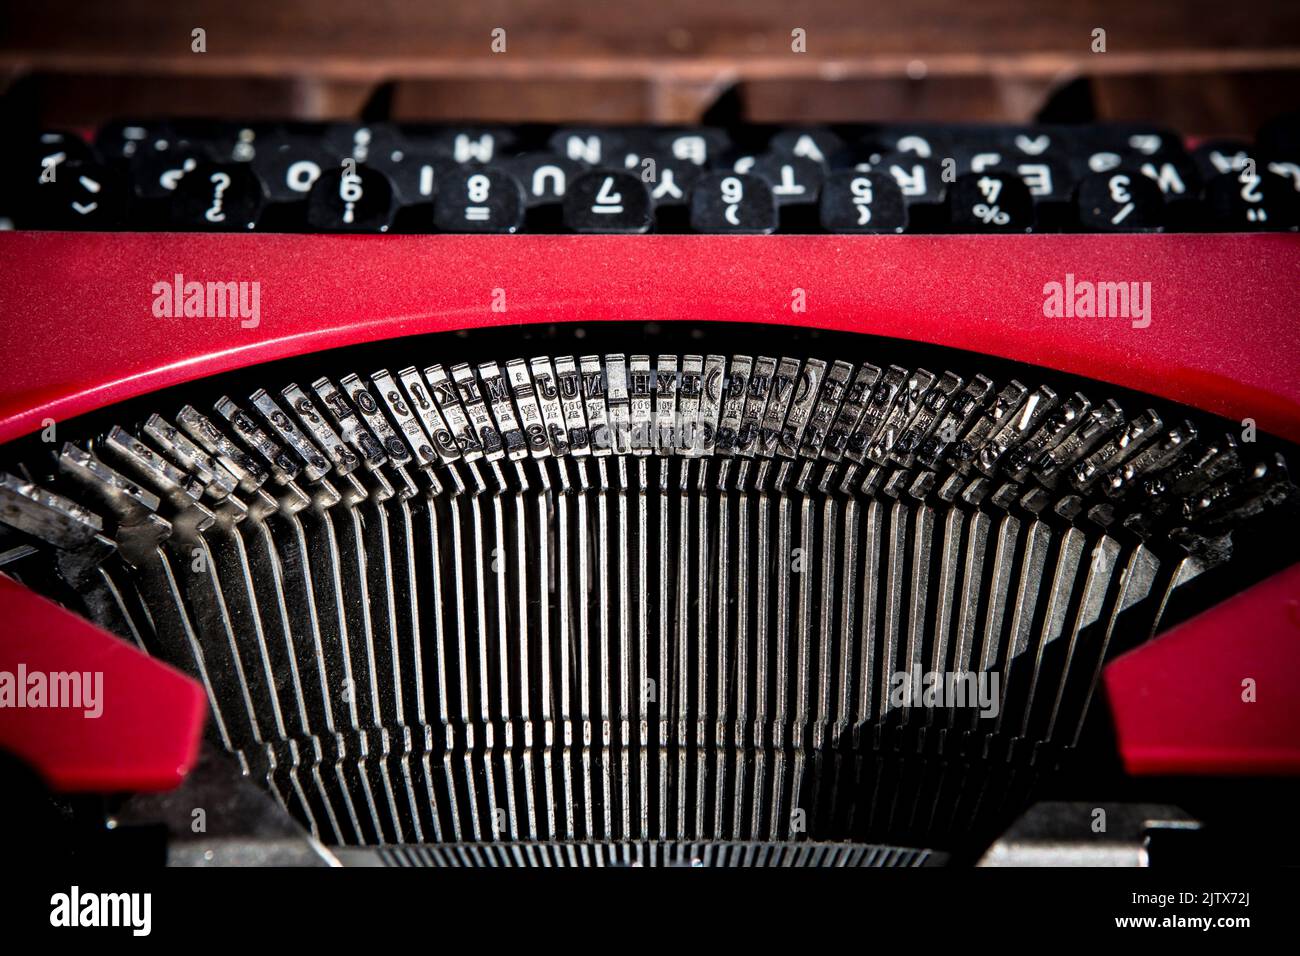 Máquina de escribir roja vintage. Primer plano de las barras de tipos. Foto de stock